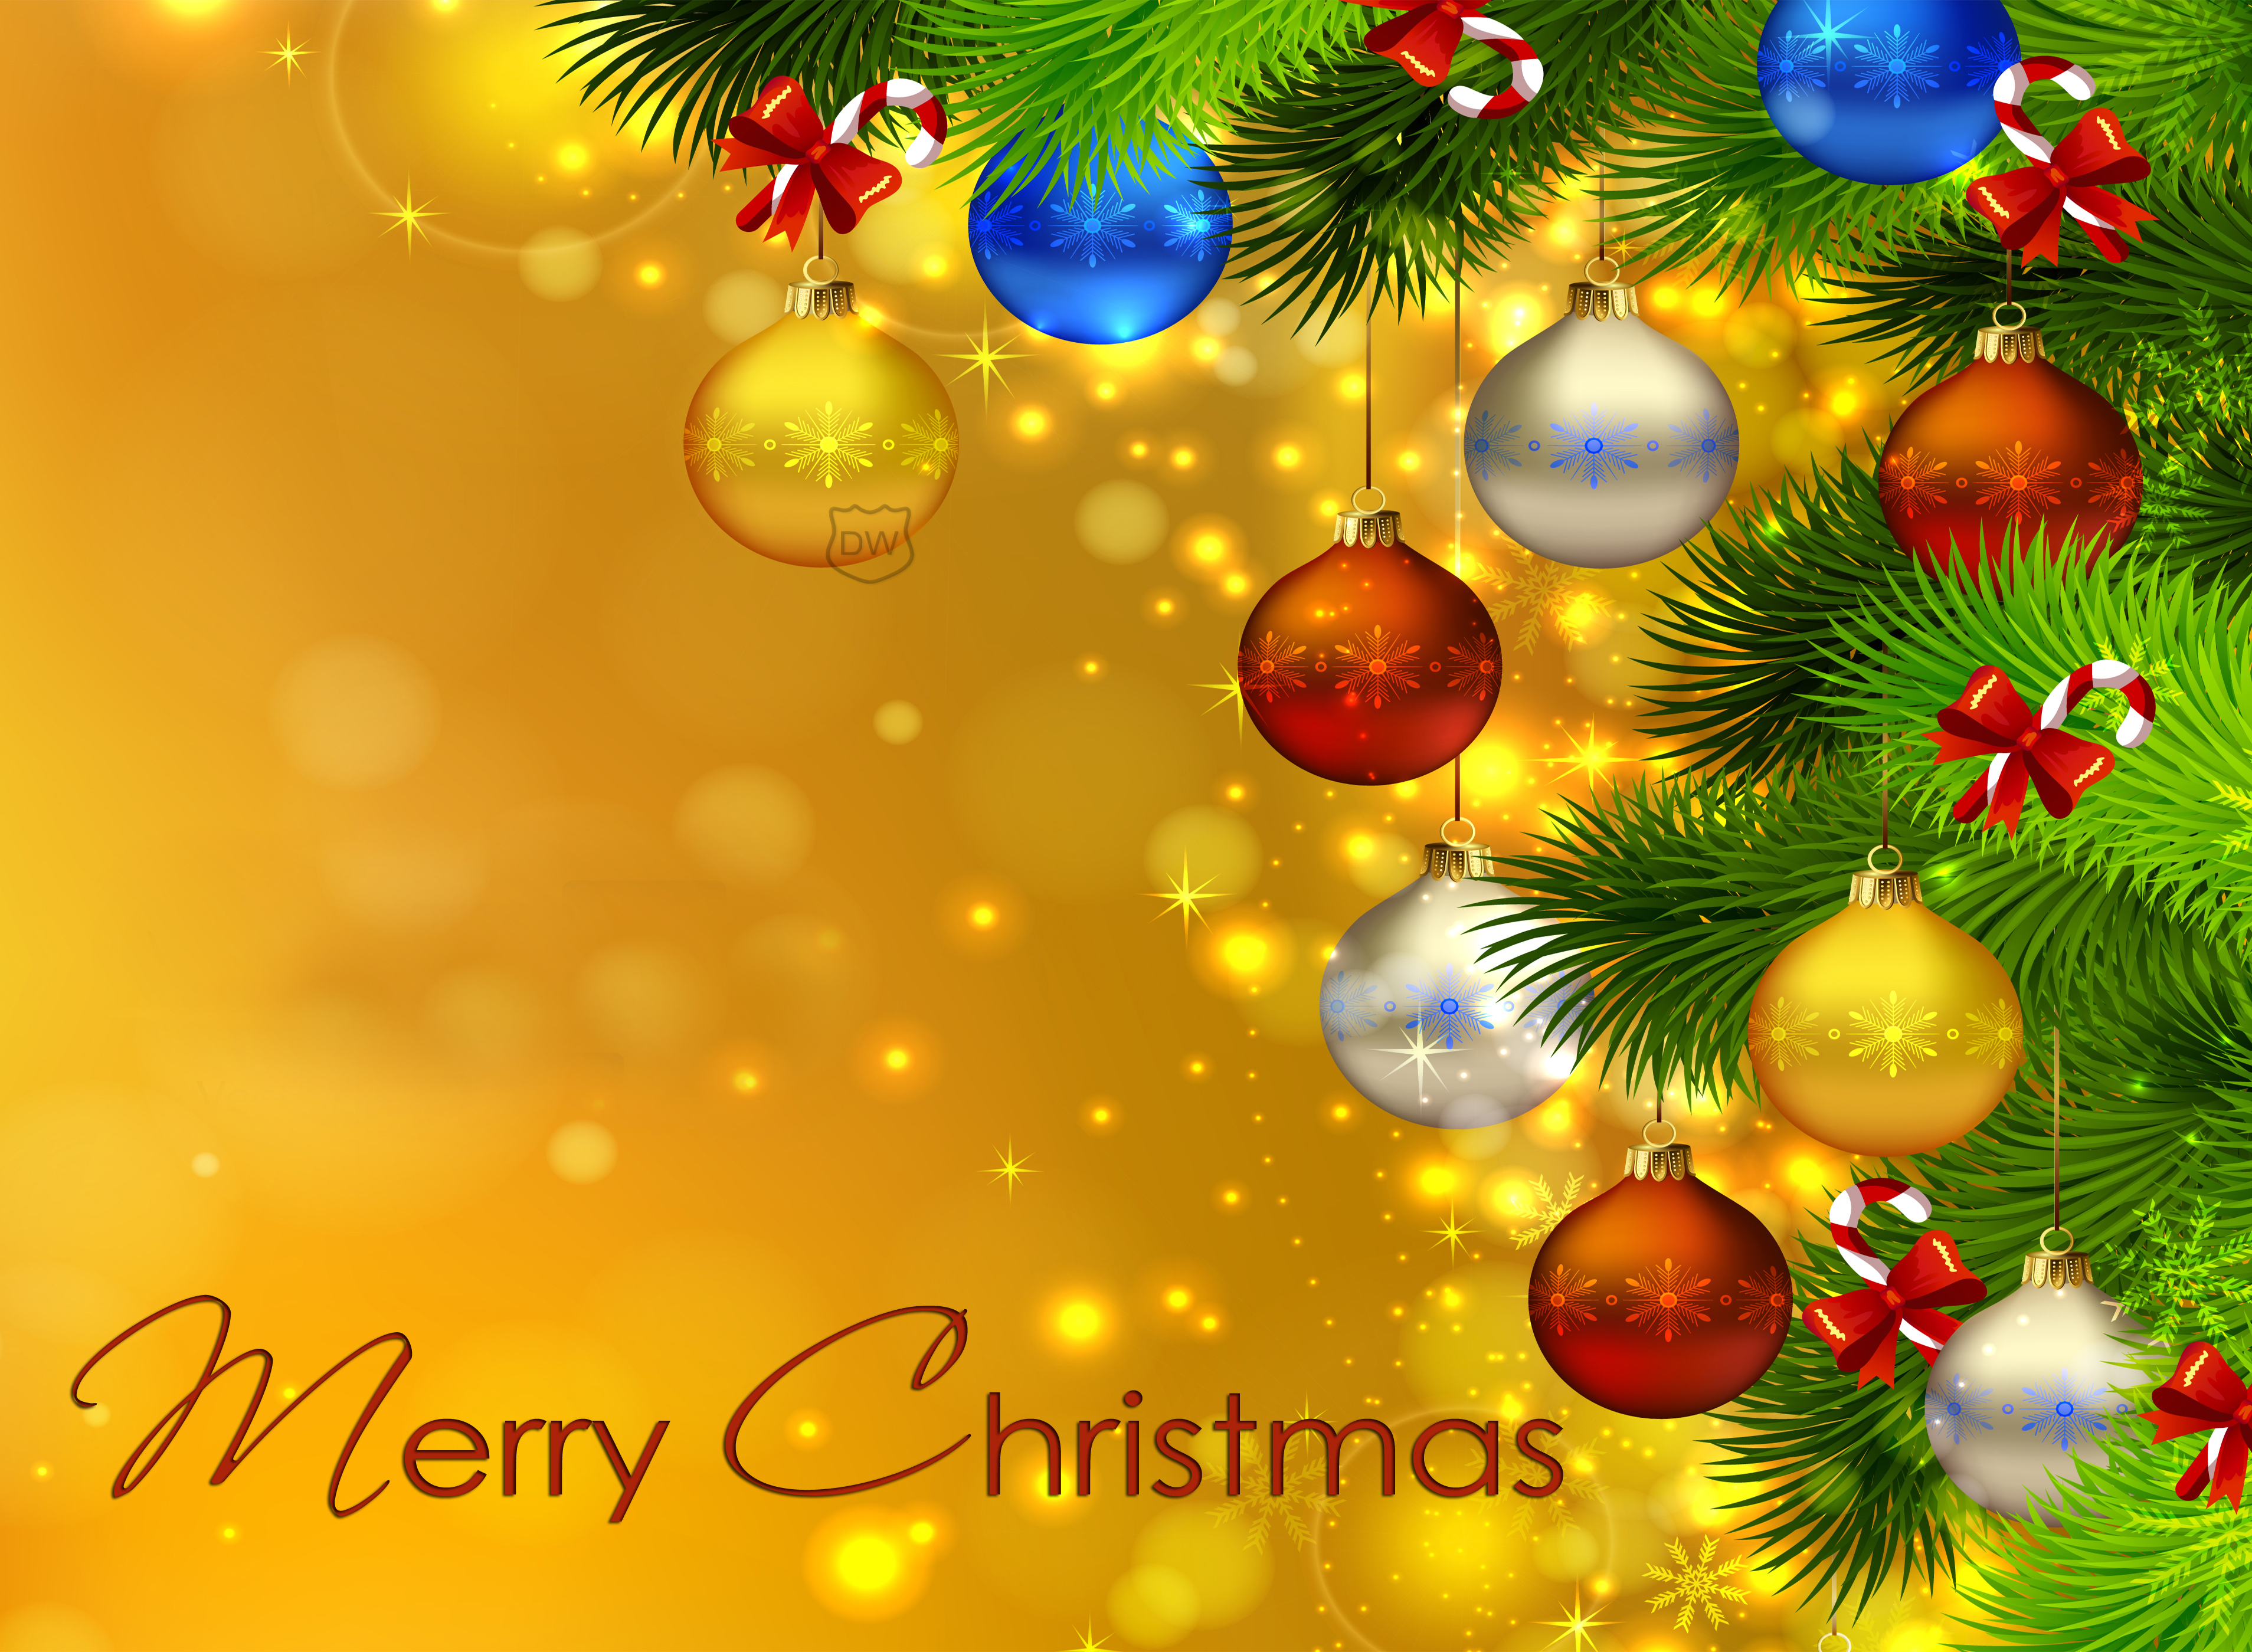 frohe weihnachten full hd wallpaper,weihnachtsbaum,weihnachtsschmuck,weihnachtsdekoration,weihnachten,baum